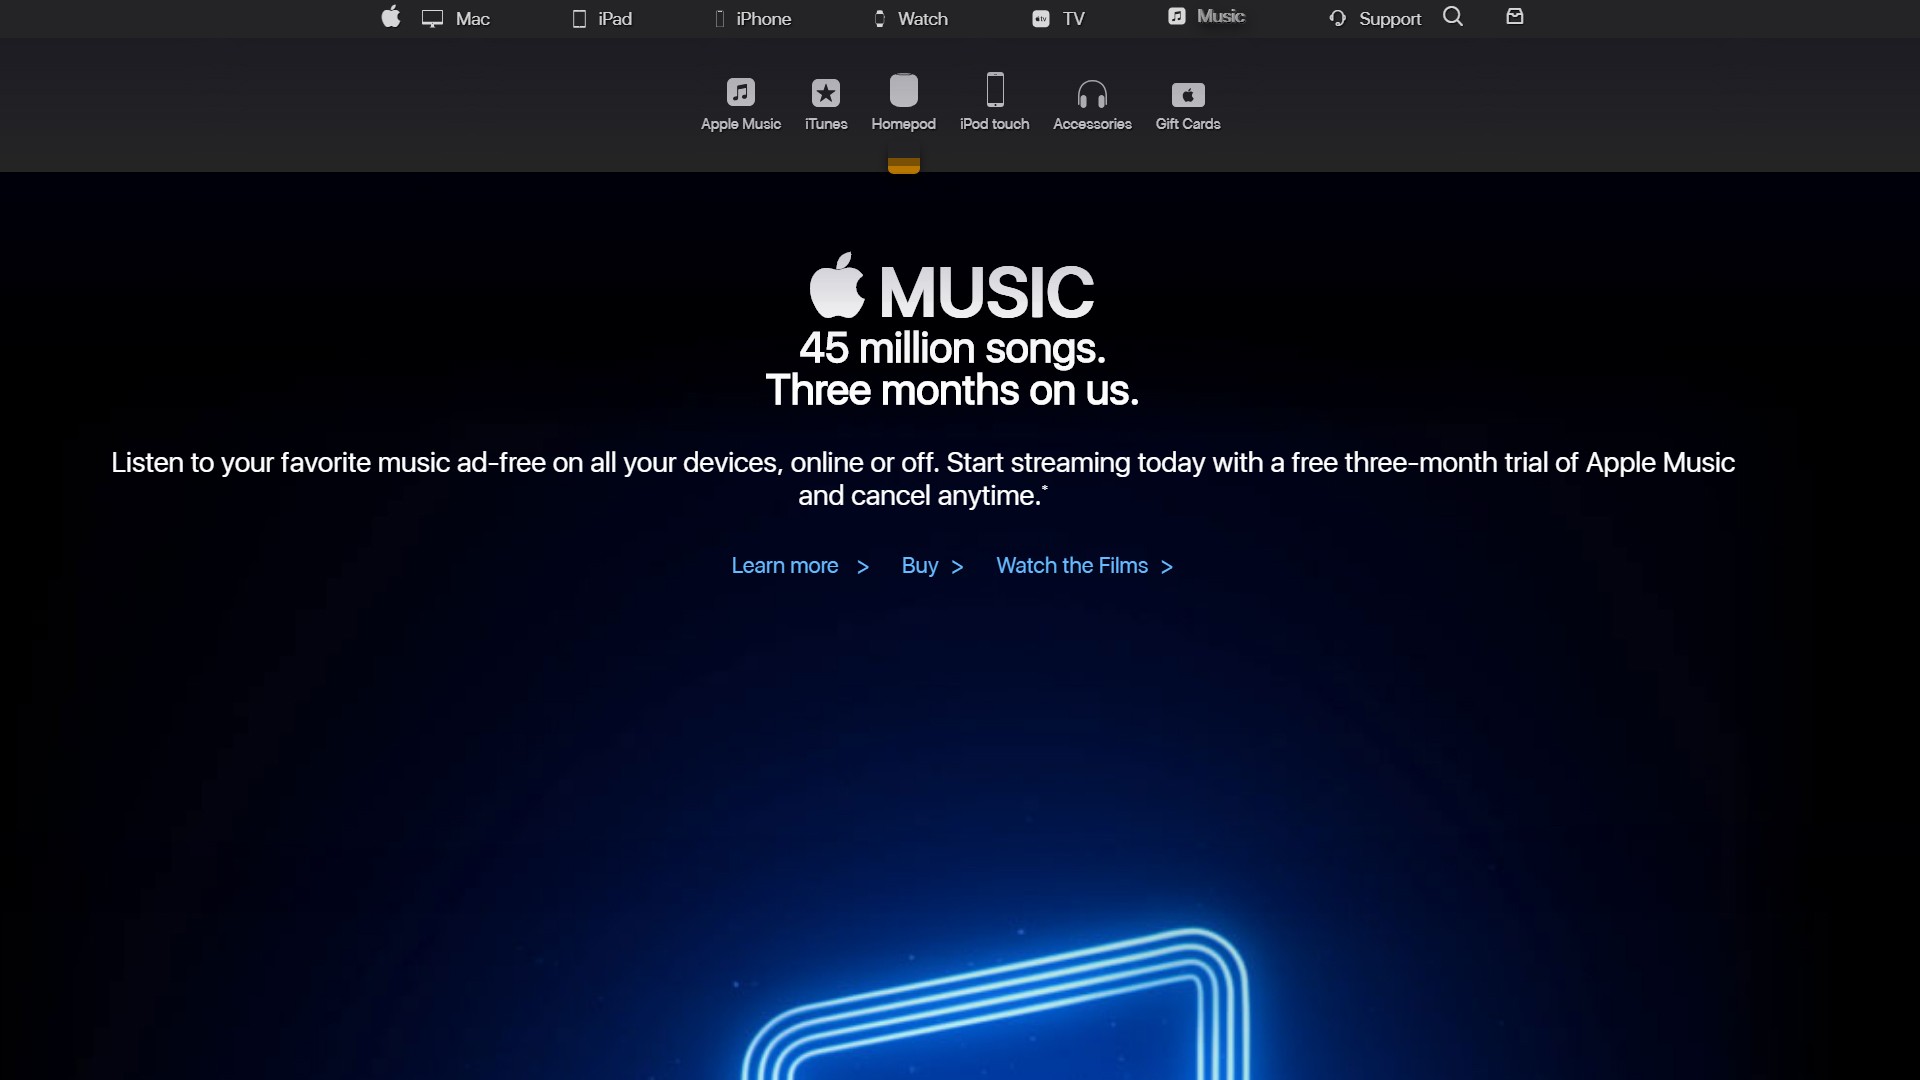 Apple.com Music UX/UI redesign